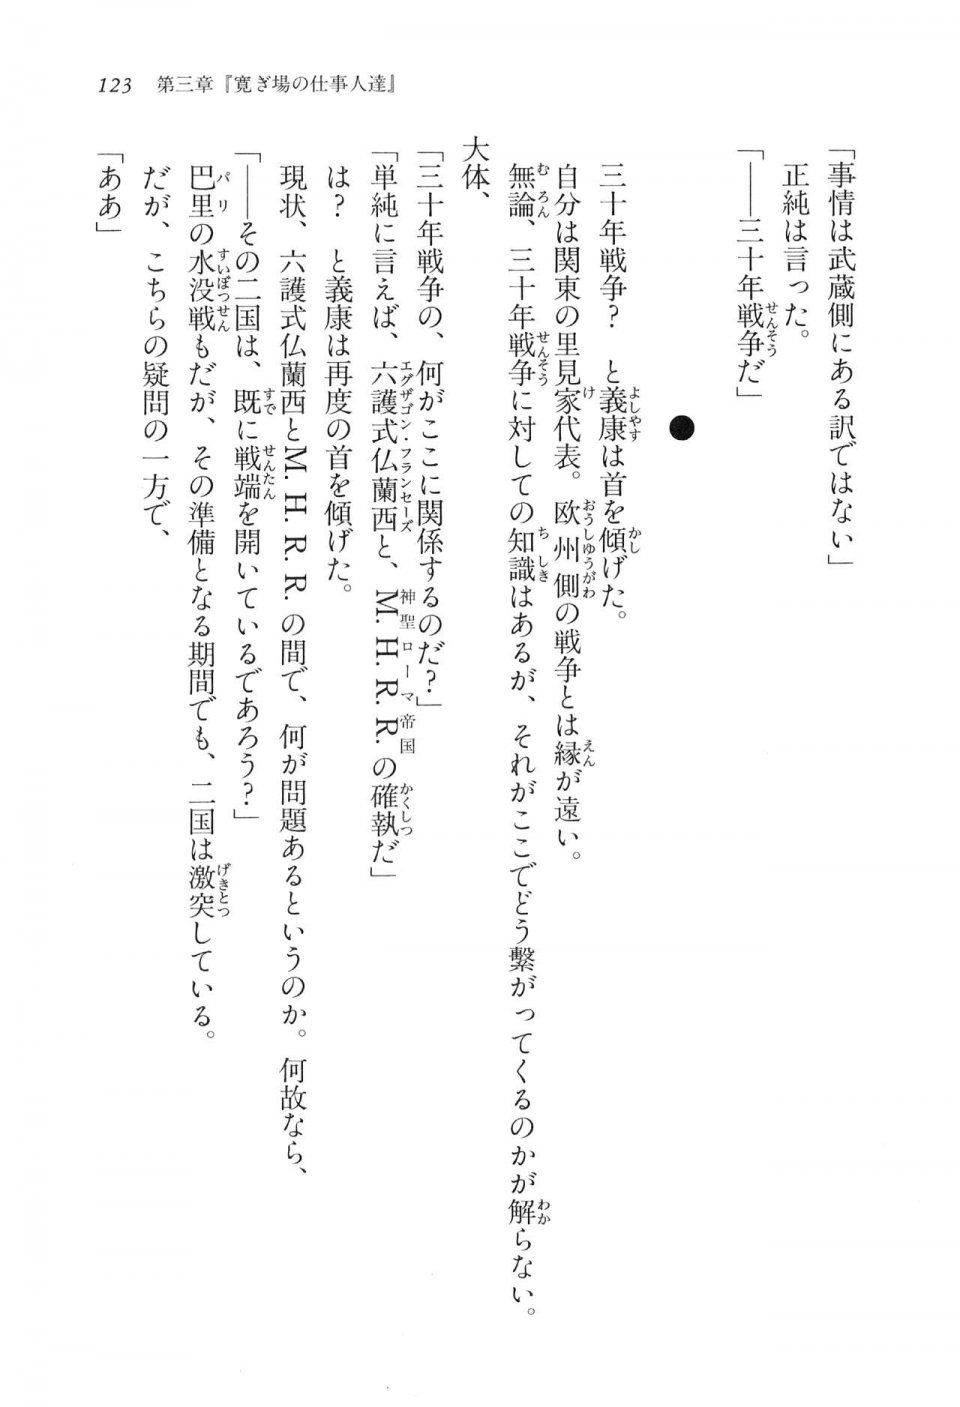 Kyoukai Senjou no Horizon LN Vol 16(7A) - Photo #123